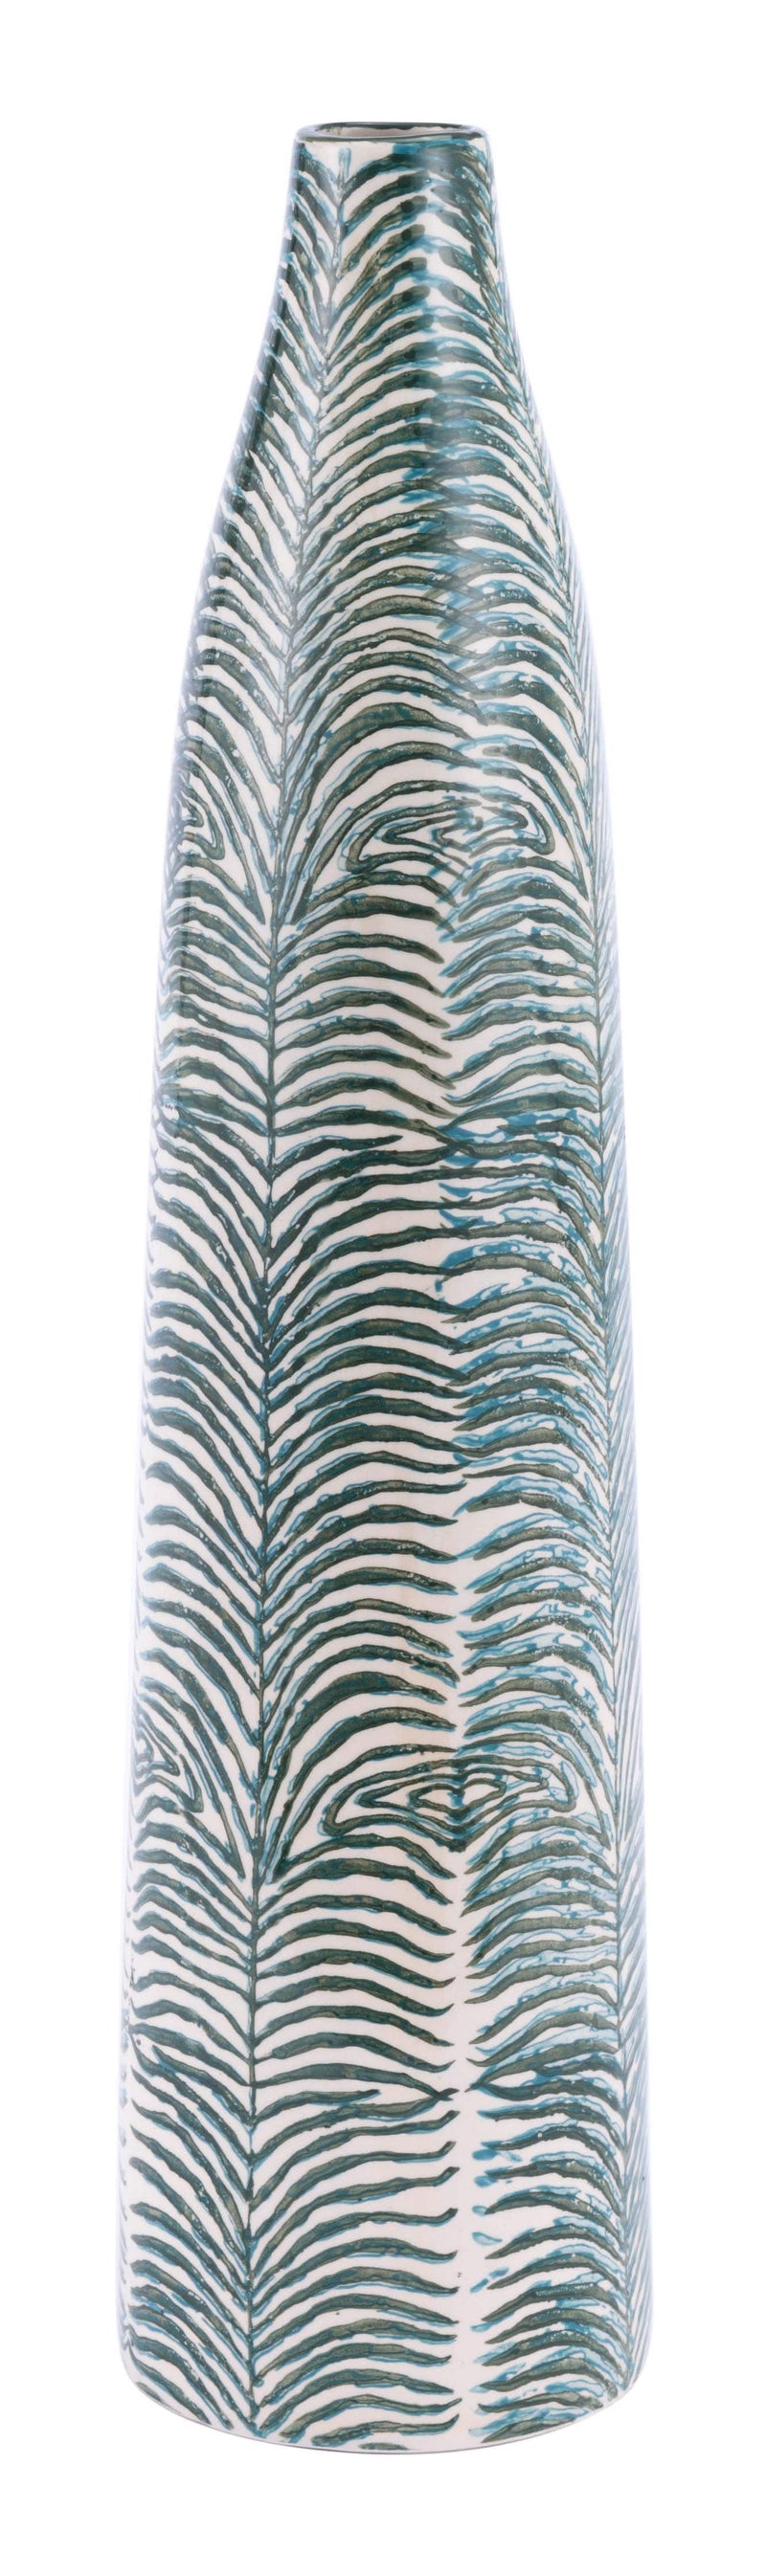 Vases Ceramic Vase - 5.5" x 5.5" x 24" Dark Green, Ceramic, Medium Vase HomeRoots